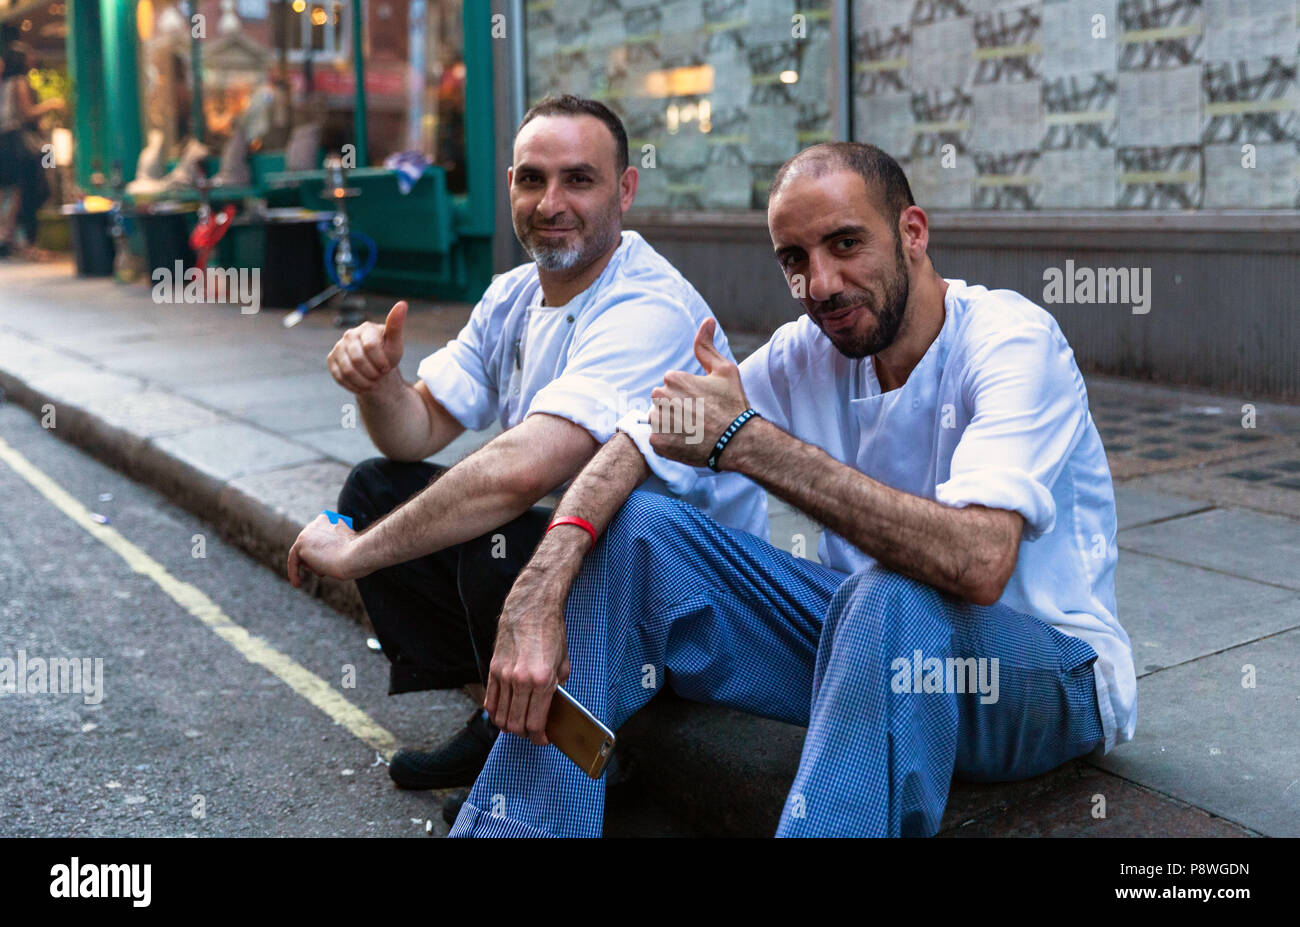 Porträt von zwei männlichen Köchen, die Pause zusammen, sitzen auf dem Bürgersteig, London, England, Großbritannien. Stockfoto